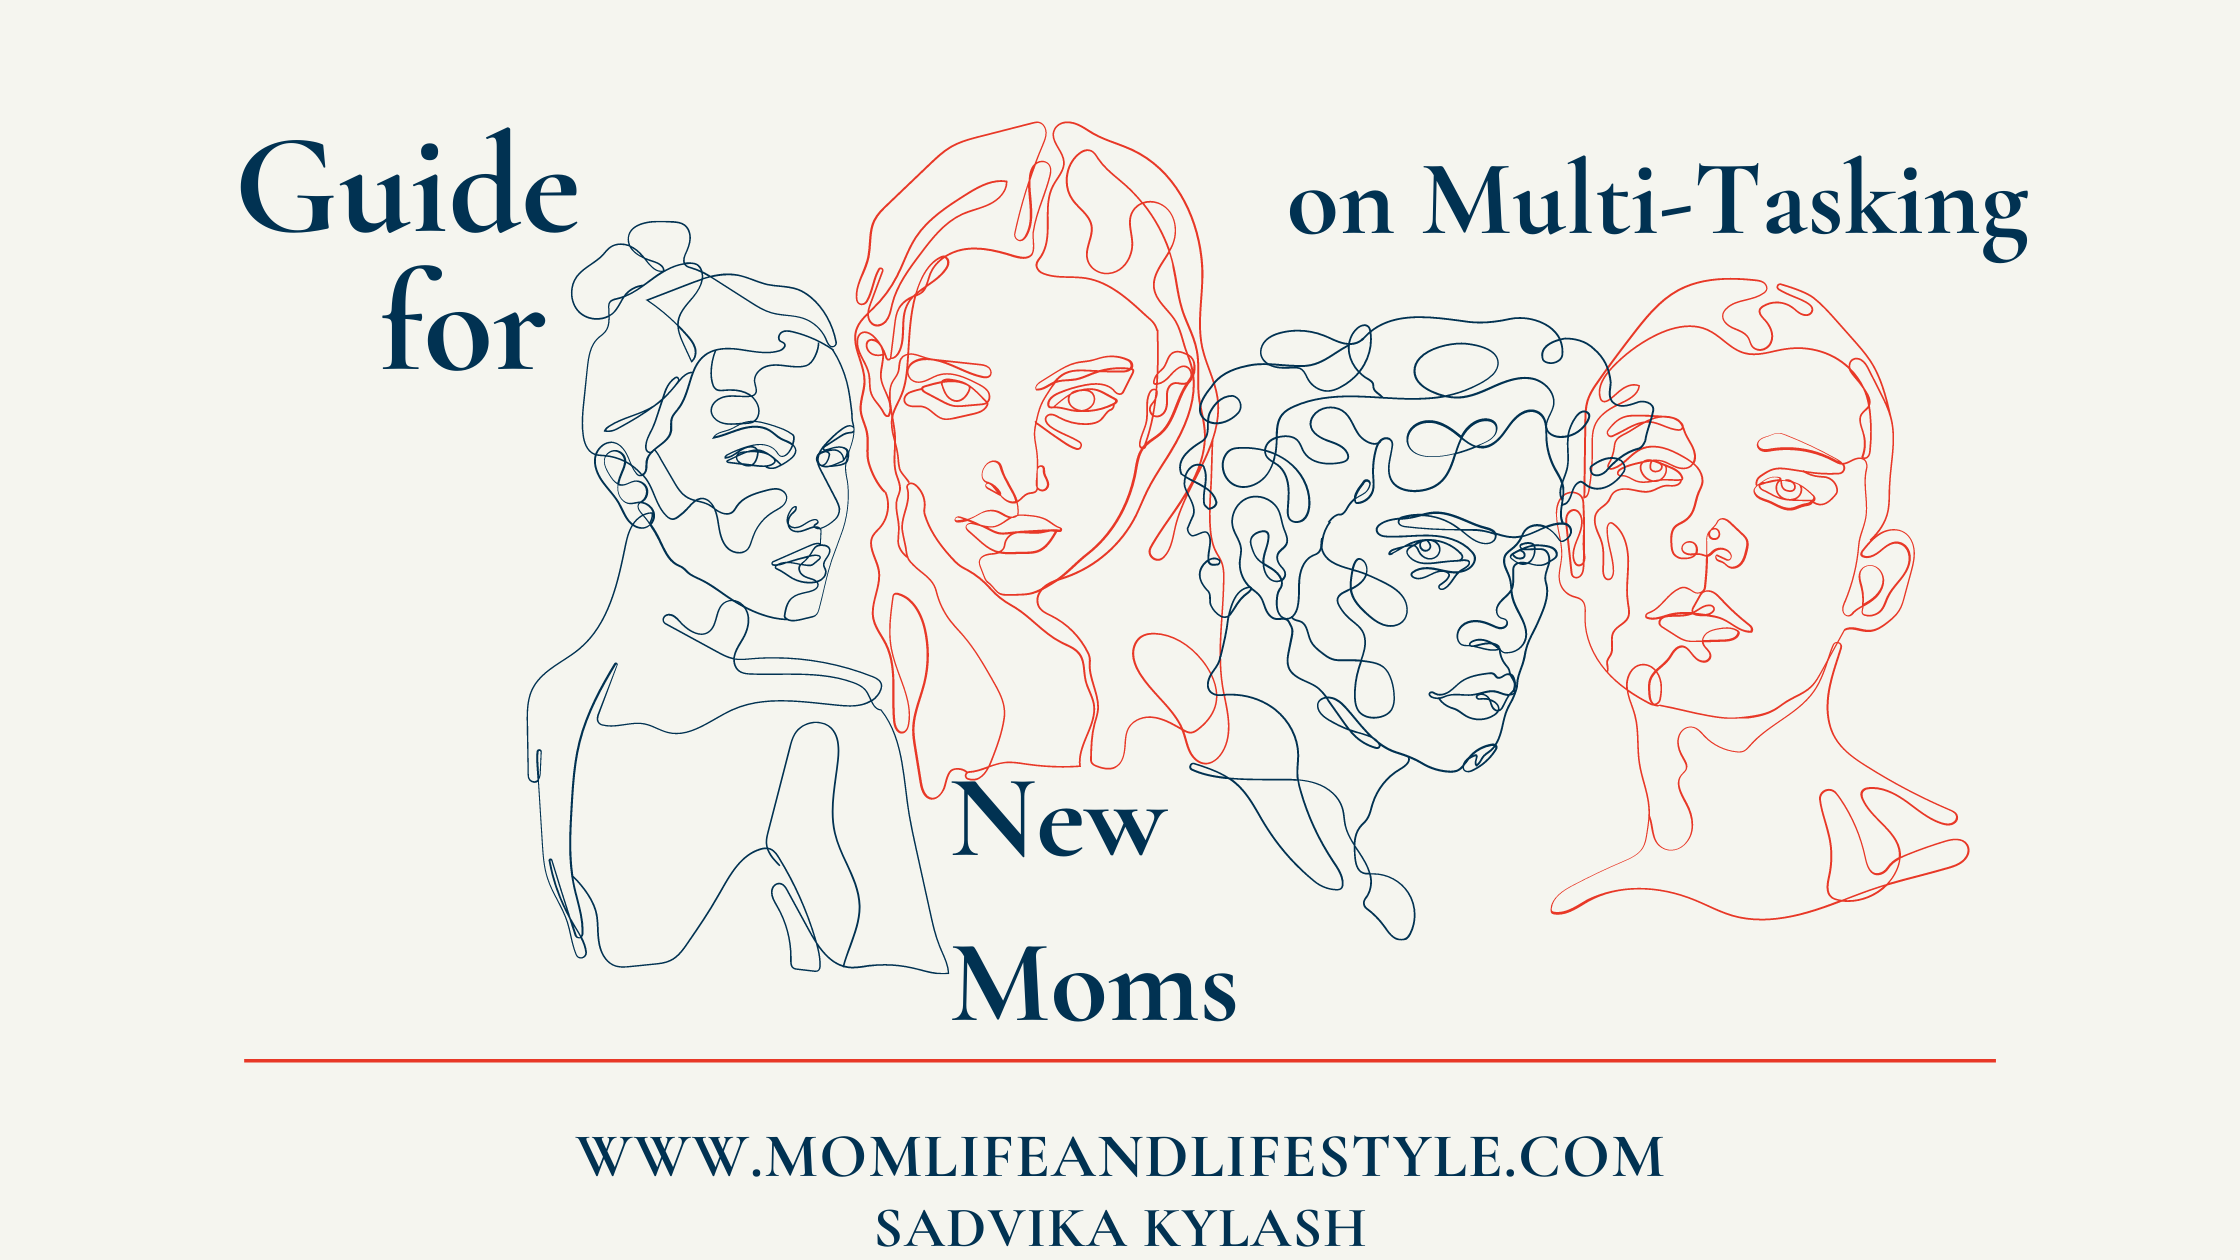 Guide for new moms on multi tasking